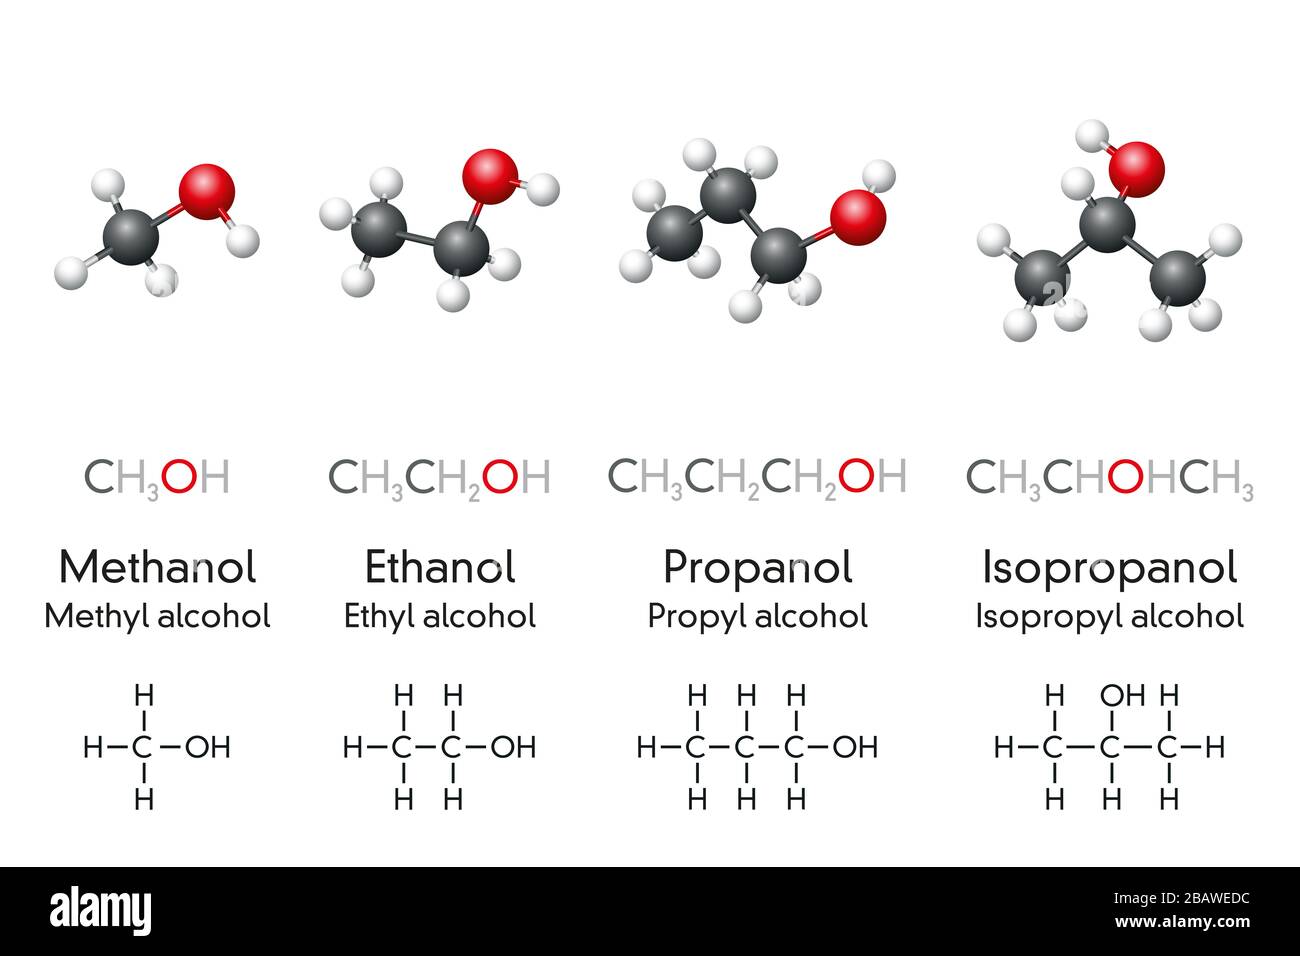 Metanol, etanol, propanol e isopropanol, modelos moleculares y fórmulas químicas de compuestos alcohólicos. Se utiliza como combustible, antiséptico y desinfectante. Foto de stock